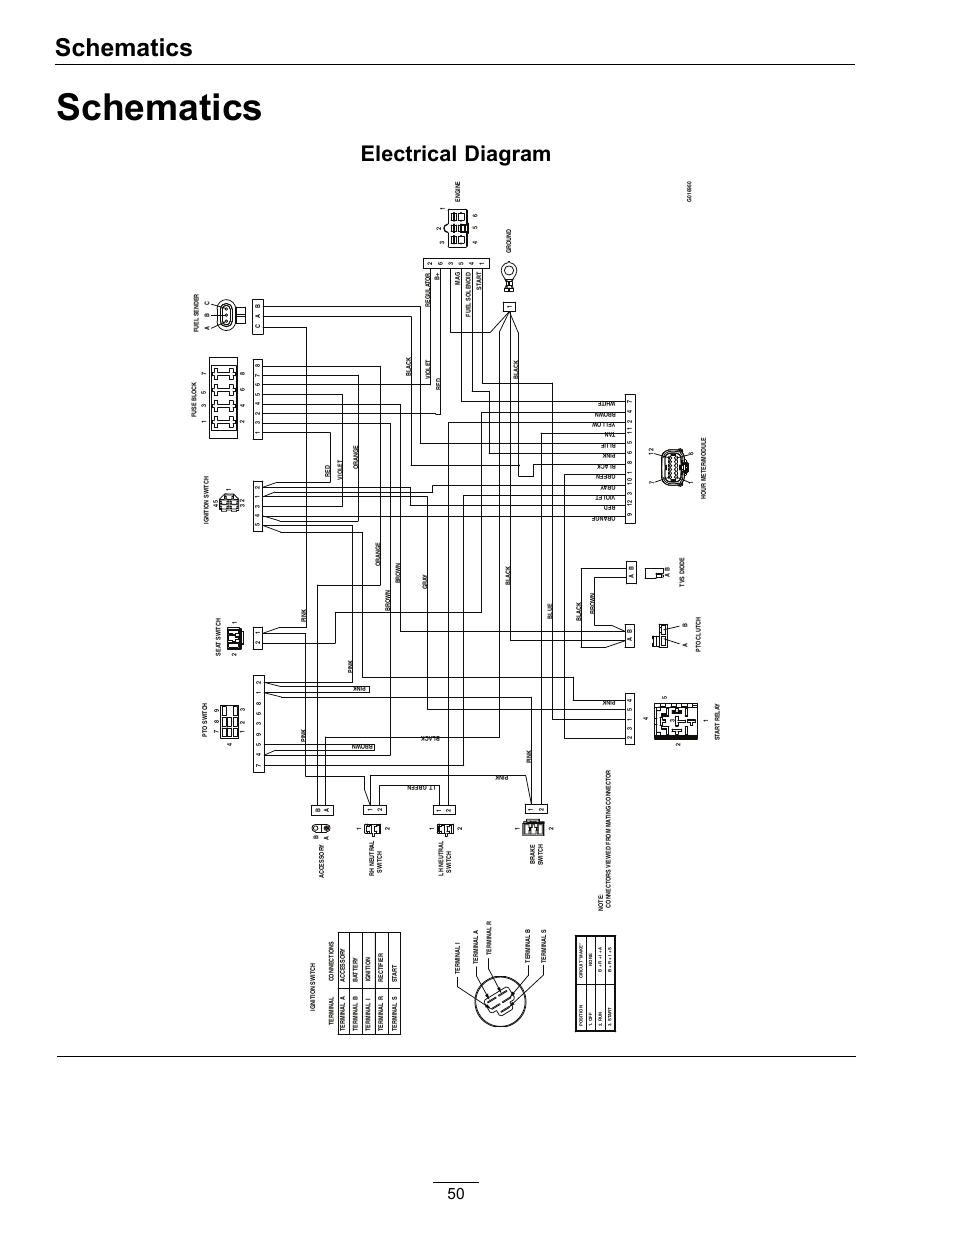 yamaha kodiak 450 carburetor diagram